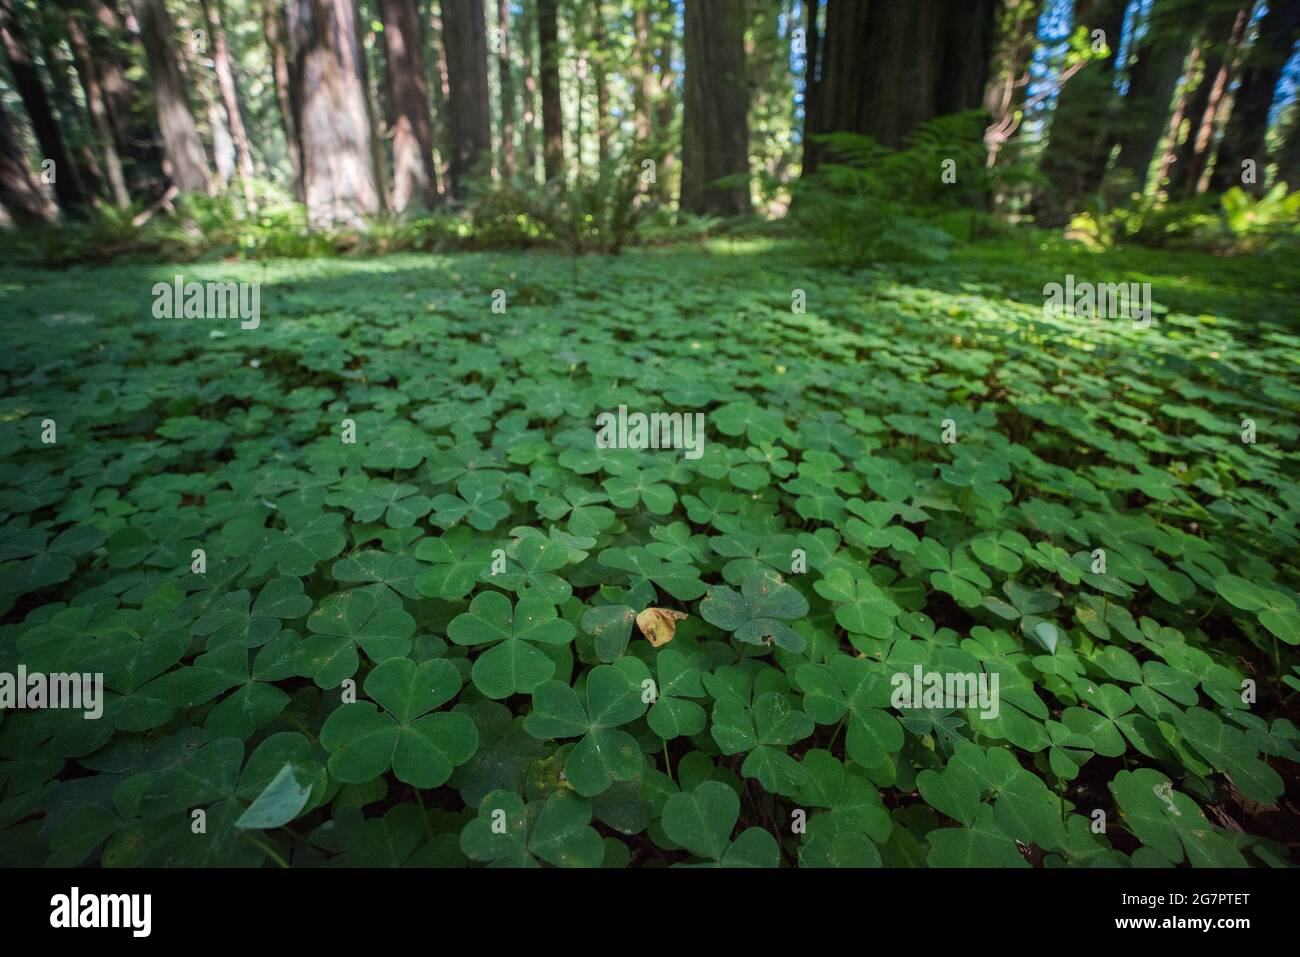 Oxalis-Pflanzen bedecken den Waldboden und machen einen Großteil des Unterwuchses im Redwood-Wald in Teilen Nordkaliforniens aus. Stockfoto